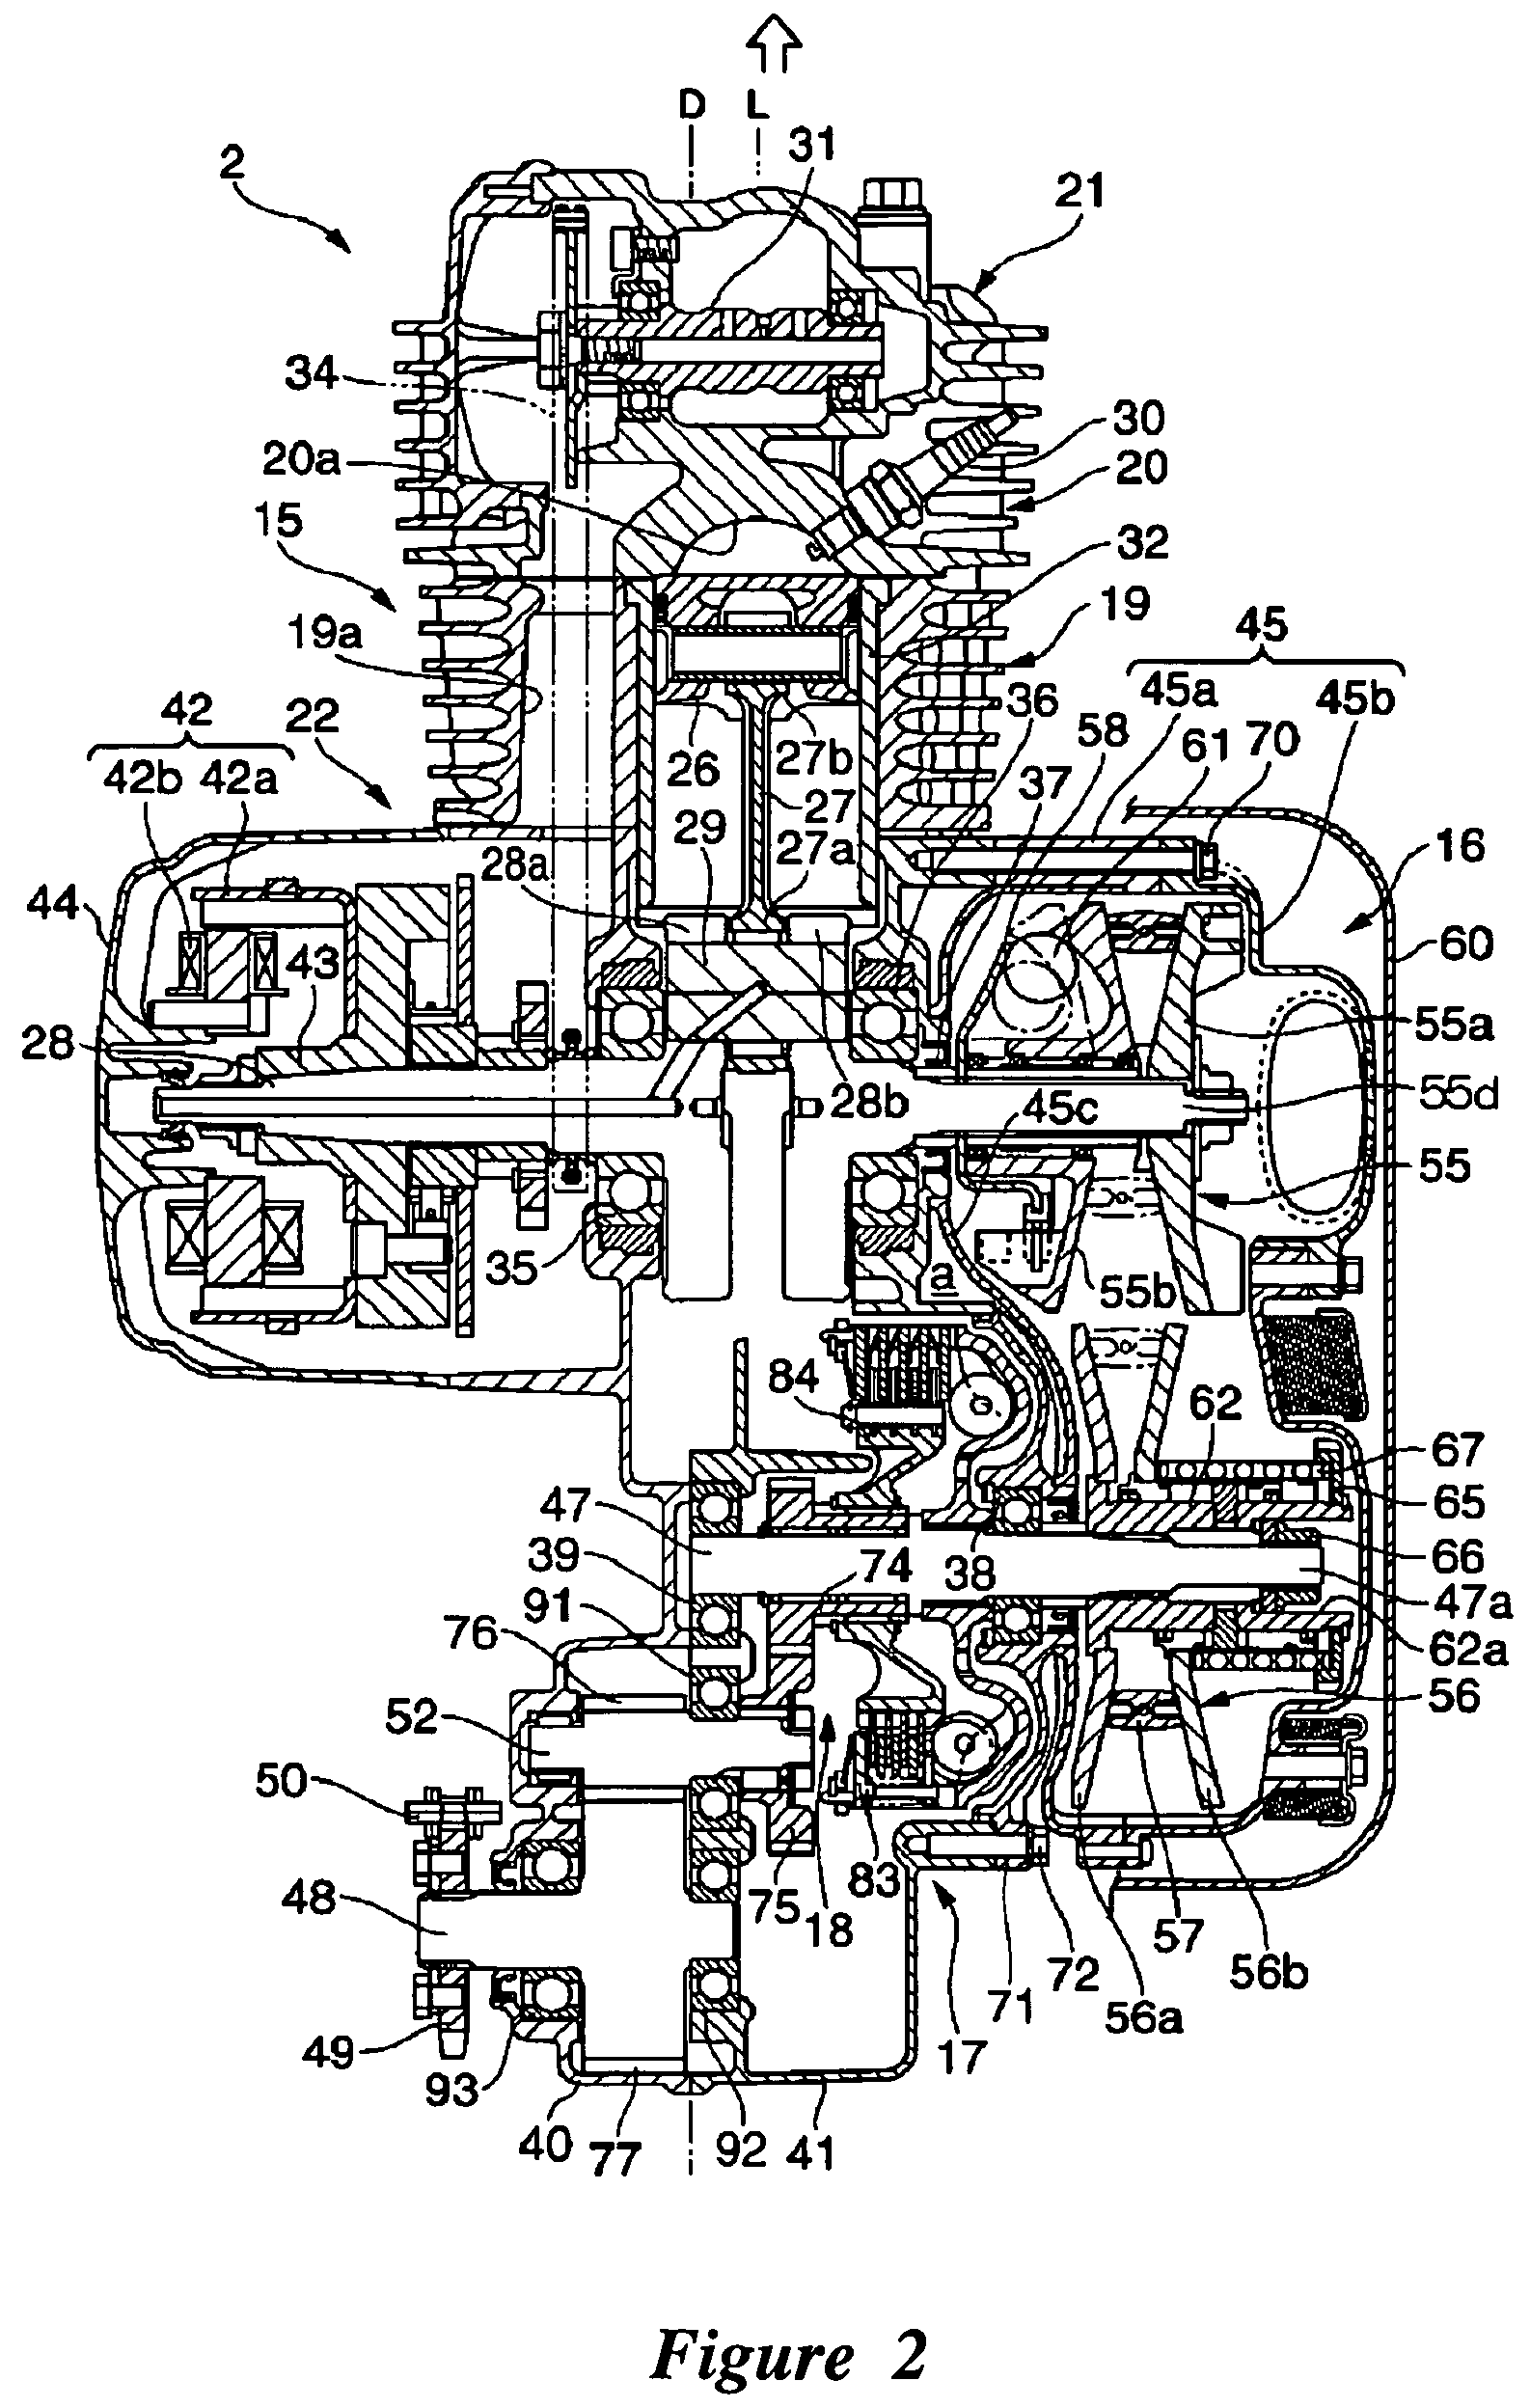 Saddle-type vehicle and engine